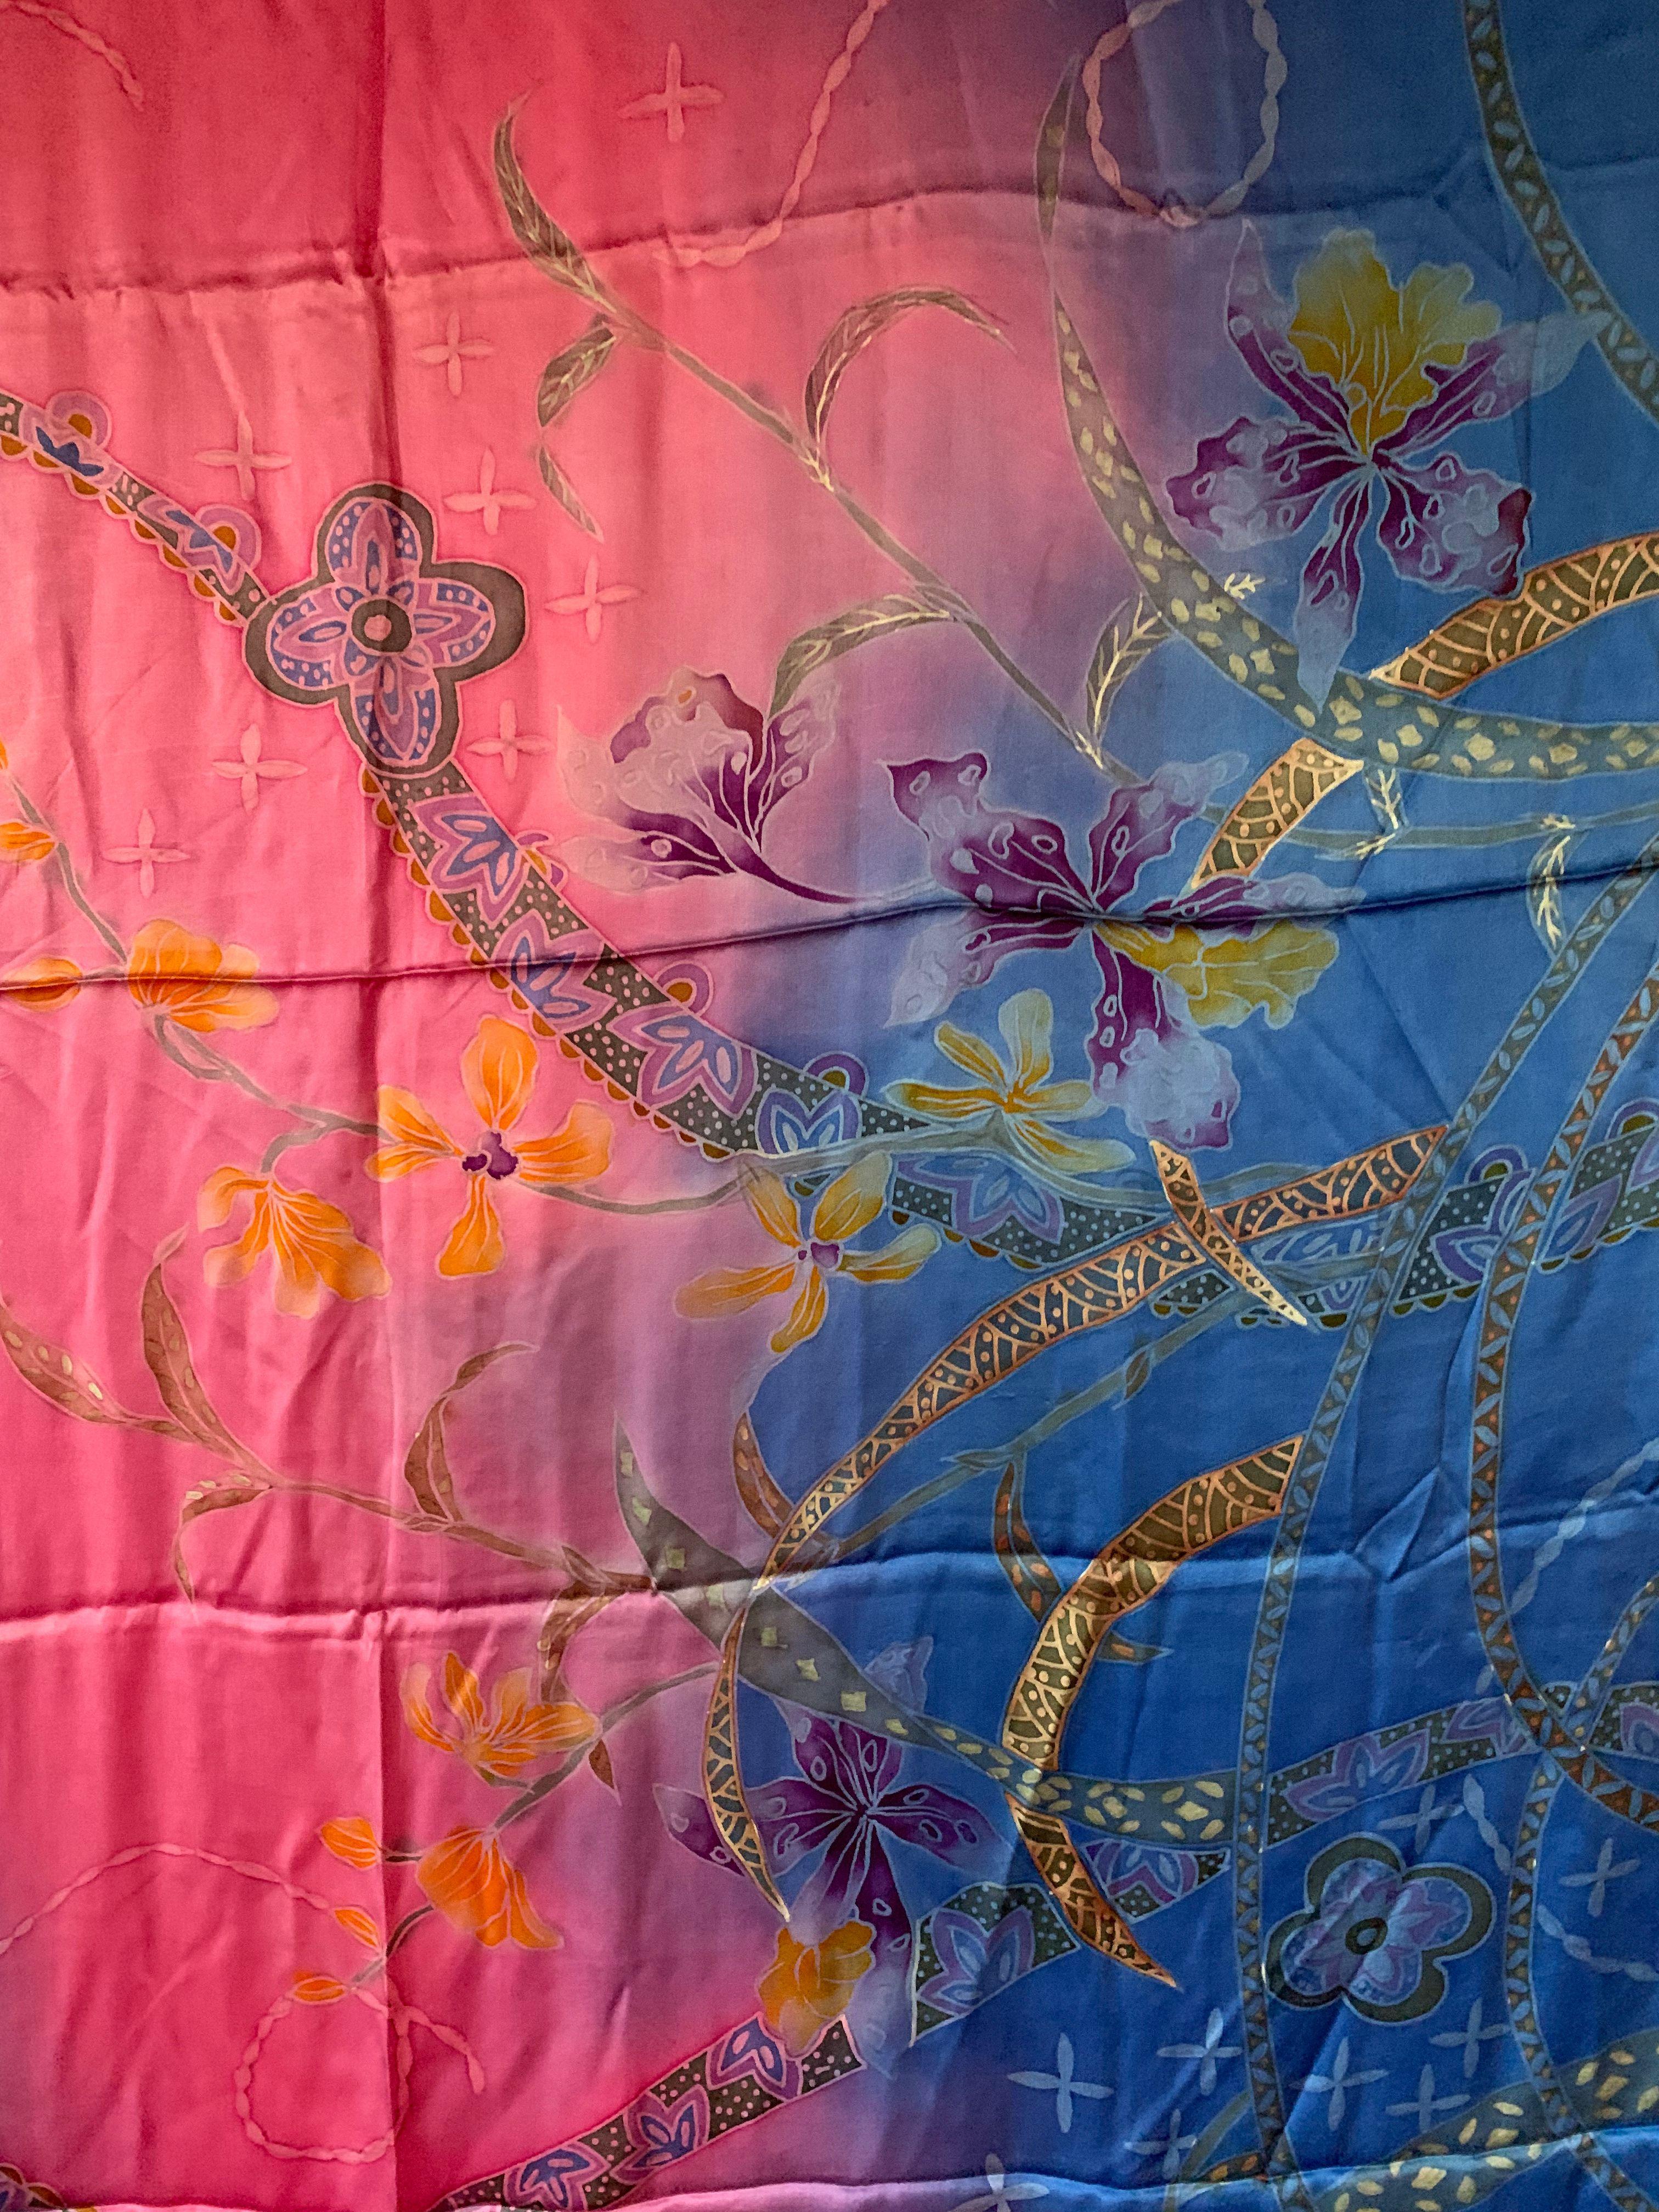 Ein wunderschönes handgefertigtes Seidentextil aus Malaysia mit atemberaubenden Details und Schattierungen. Ein wunderbares Dekorationsobjekt, das Wärme und Farbe in jeden Raum bringt. Dieses Textil wurde von lokalen Webern in Handarbeit hergestellt.